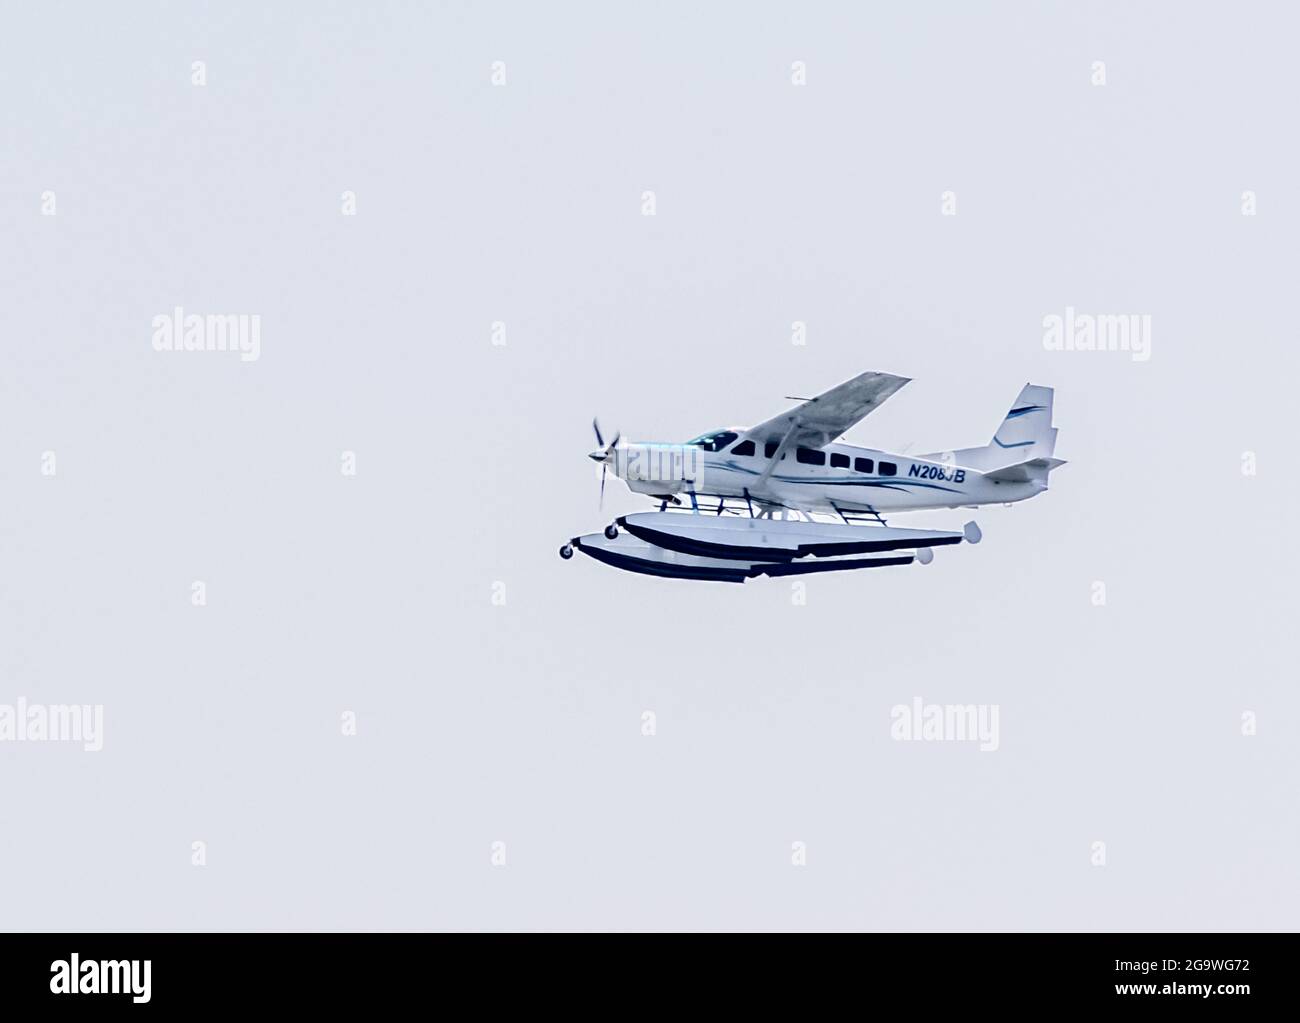 Jimmy Buffett's Cessna Caravan Floatplane, N208JB in flight Stock Photo